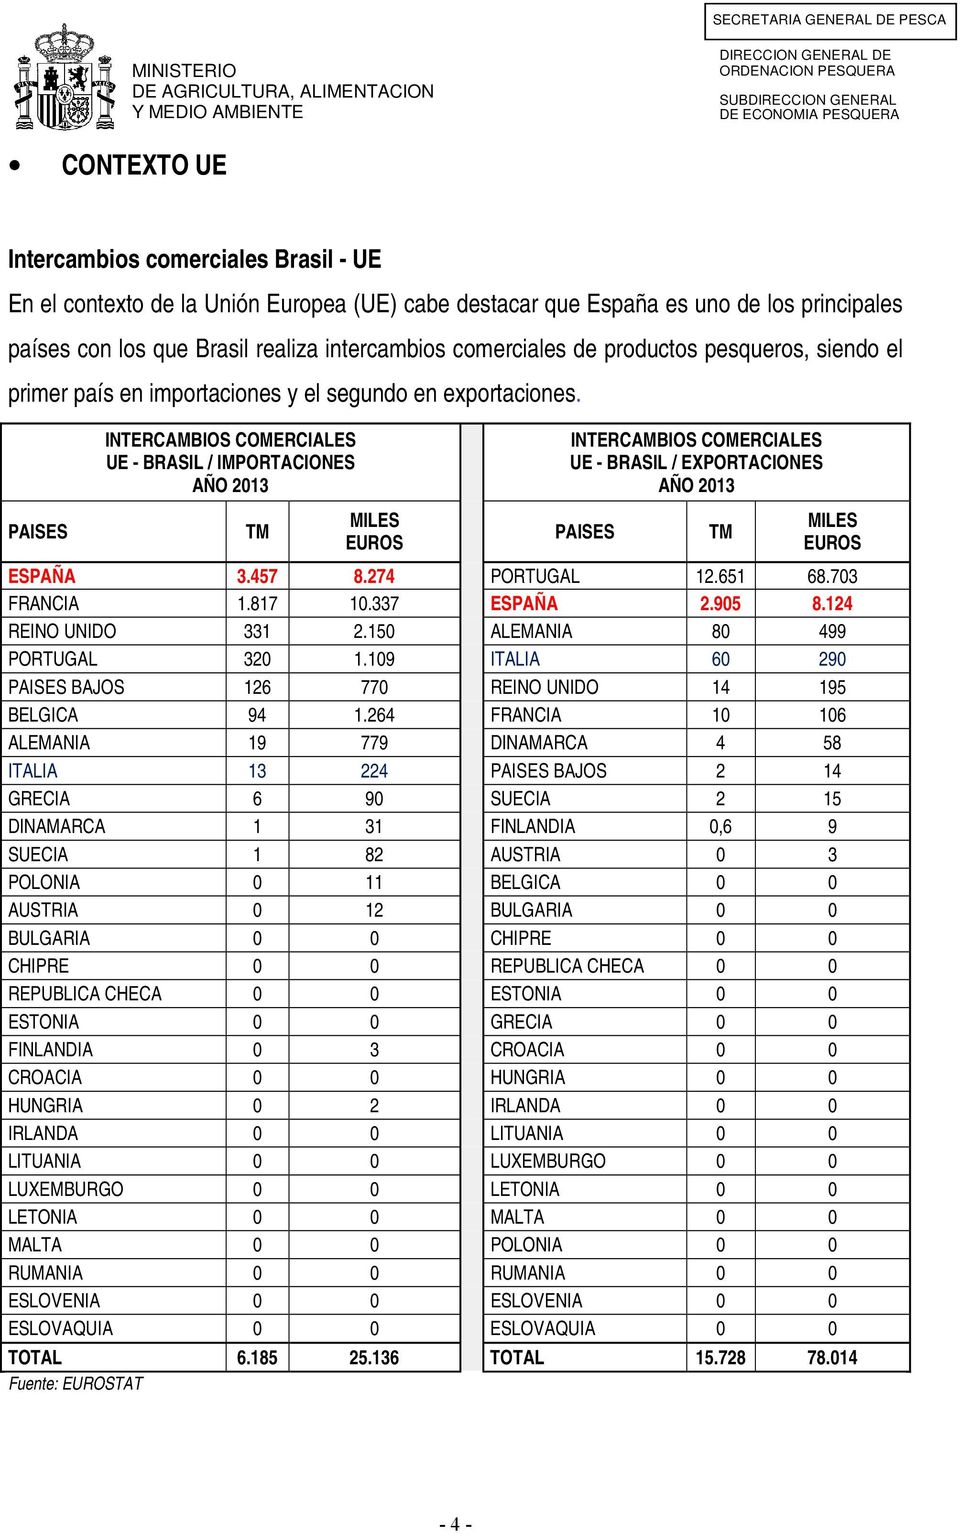 INTERCAMBIOS COMERCIALES UE - BRASIL / IMPORTACIONES AÑO 2013 INTERCAMBIOS COMERCIALES UE - BRASIL / EXPORTACIONES AÑO 2013 PAISES TM MILES EUROS PAISES TM MILES EUROS ESPAÑA 3.457 8.274 PORTUGAL 12.